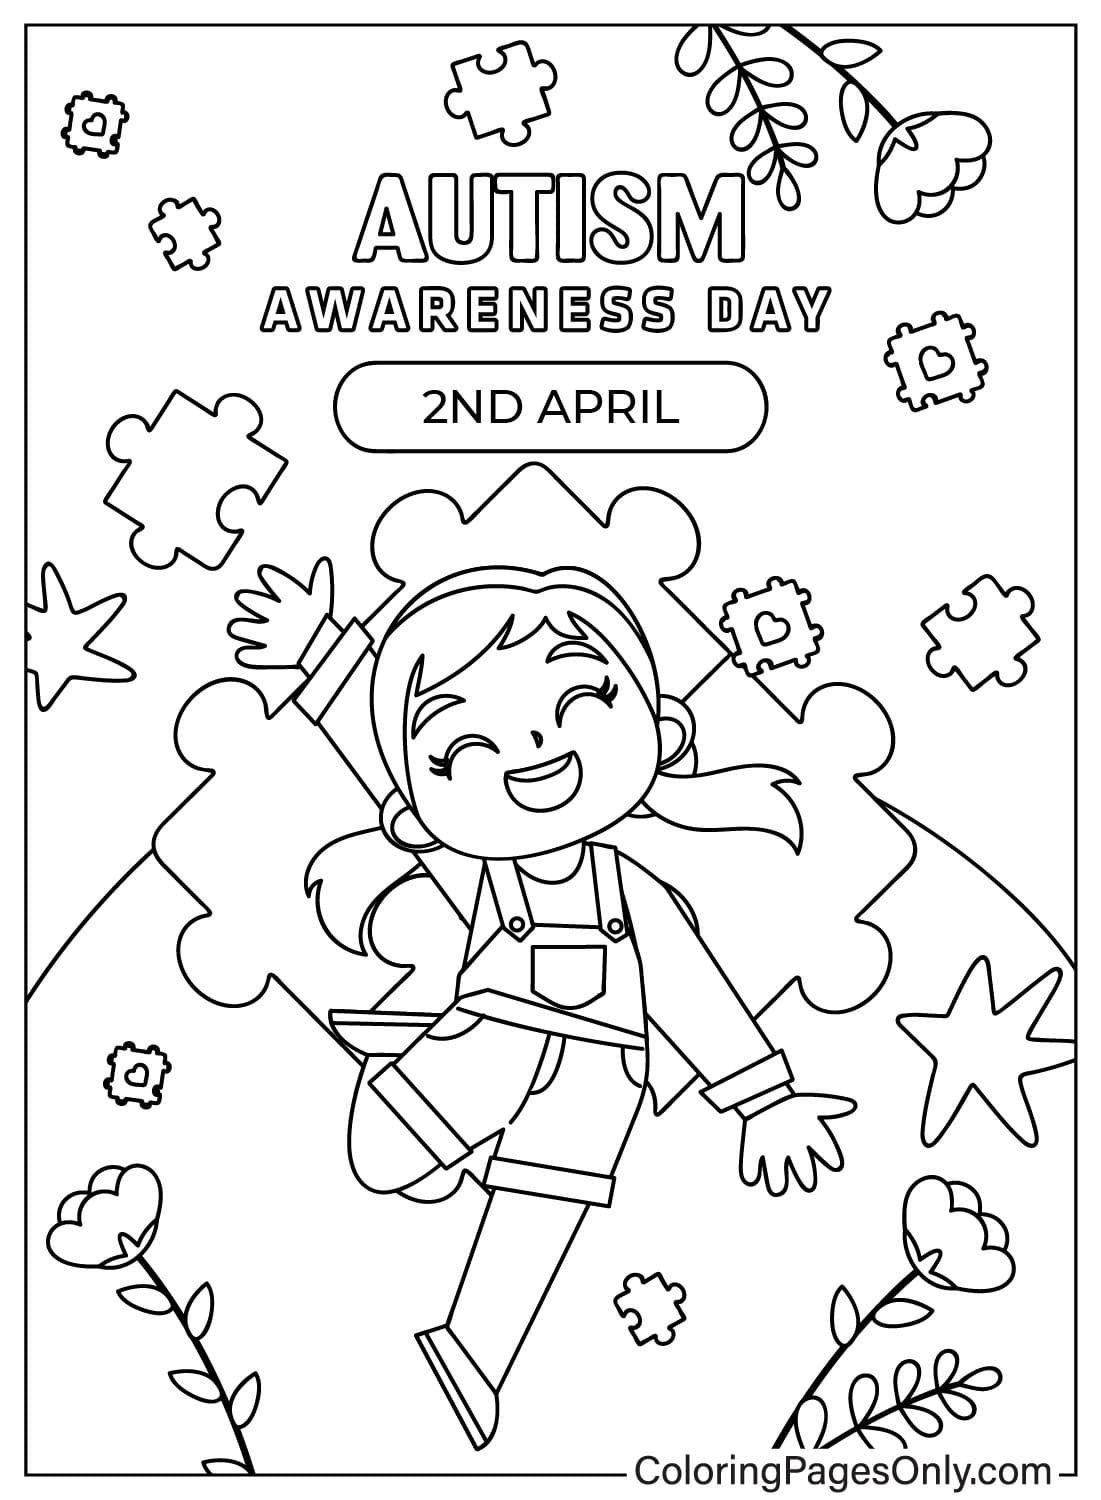 Dibujo de la página para colorear de concienciación sobre el autismo del Día Mundial de Concienciación sobre el Autismo